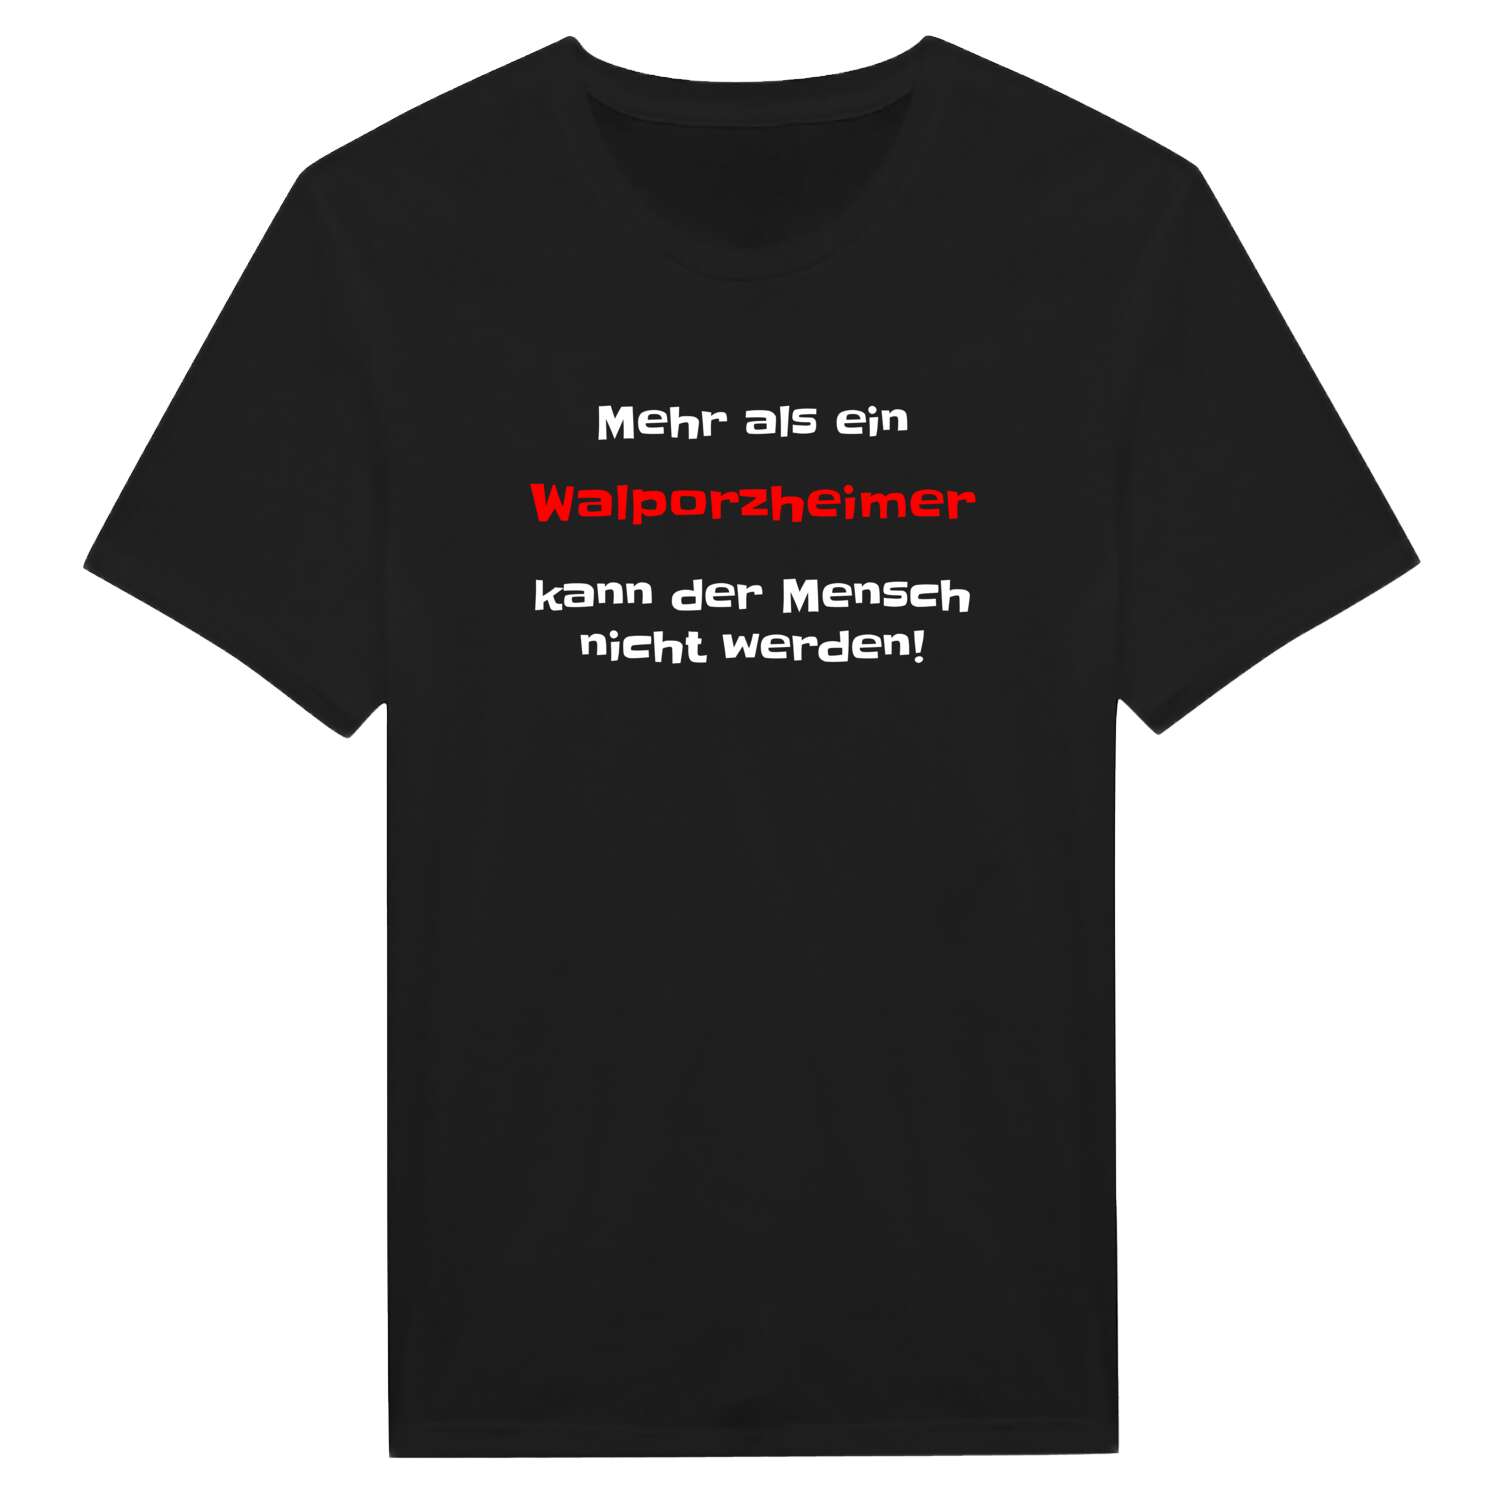 Walporzheim T-Shirt »Mehr als ein«